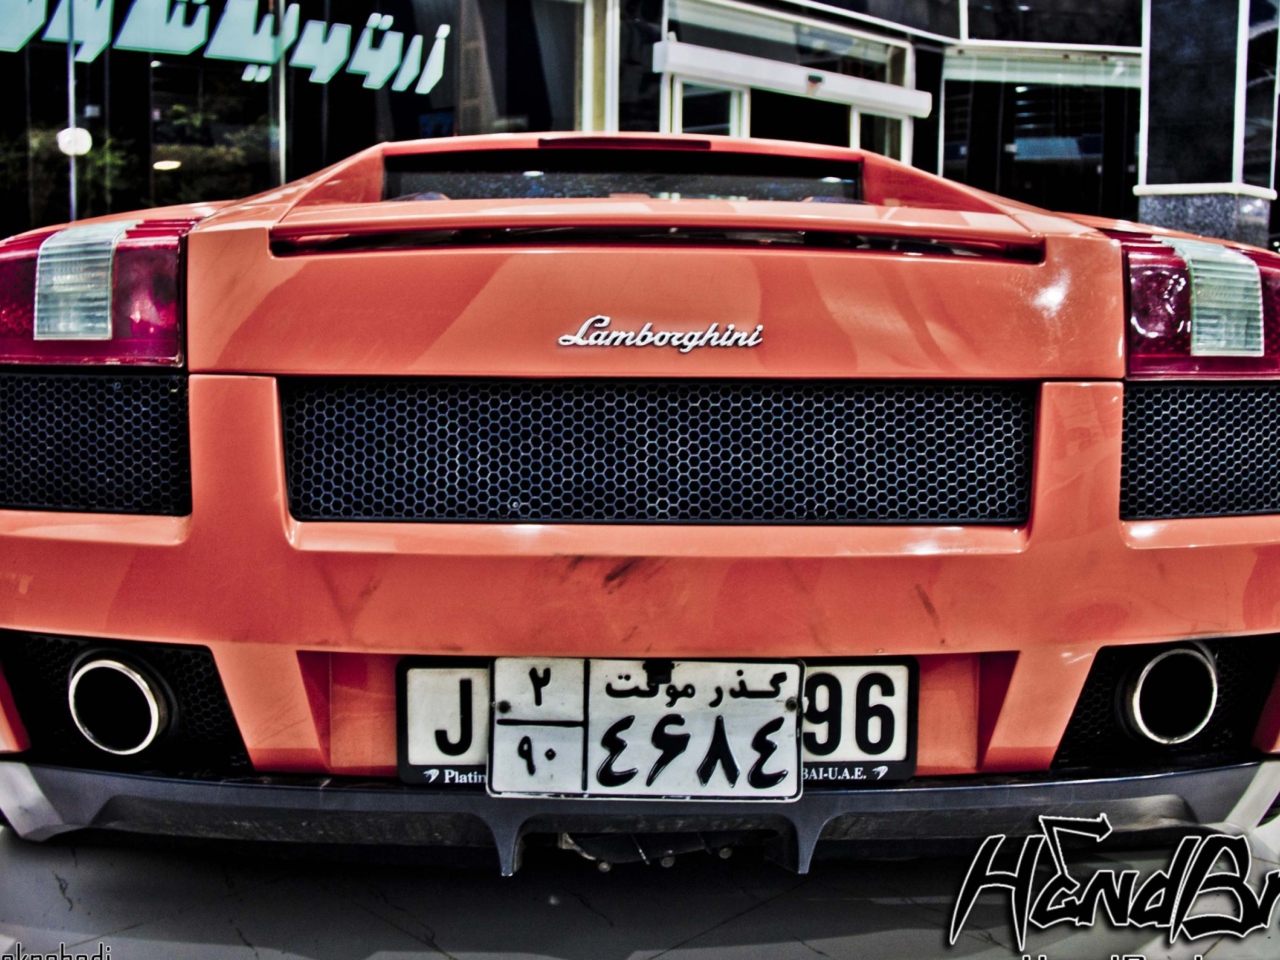 Fondo de pantalla Lamborghini 1280x960